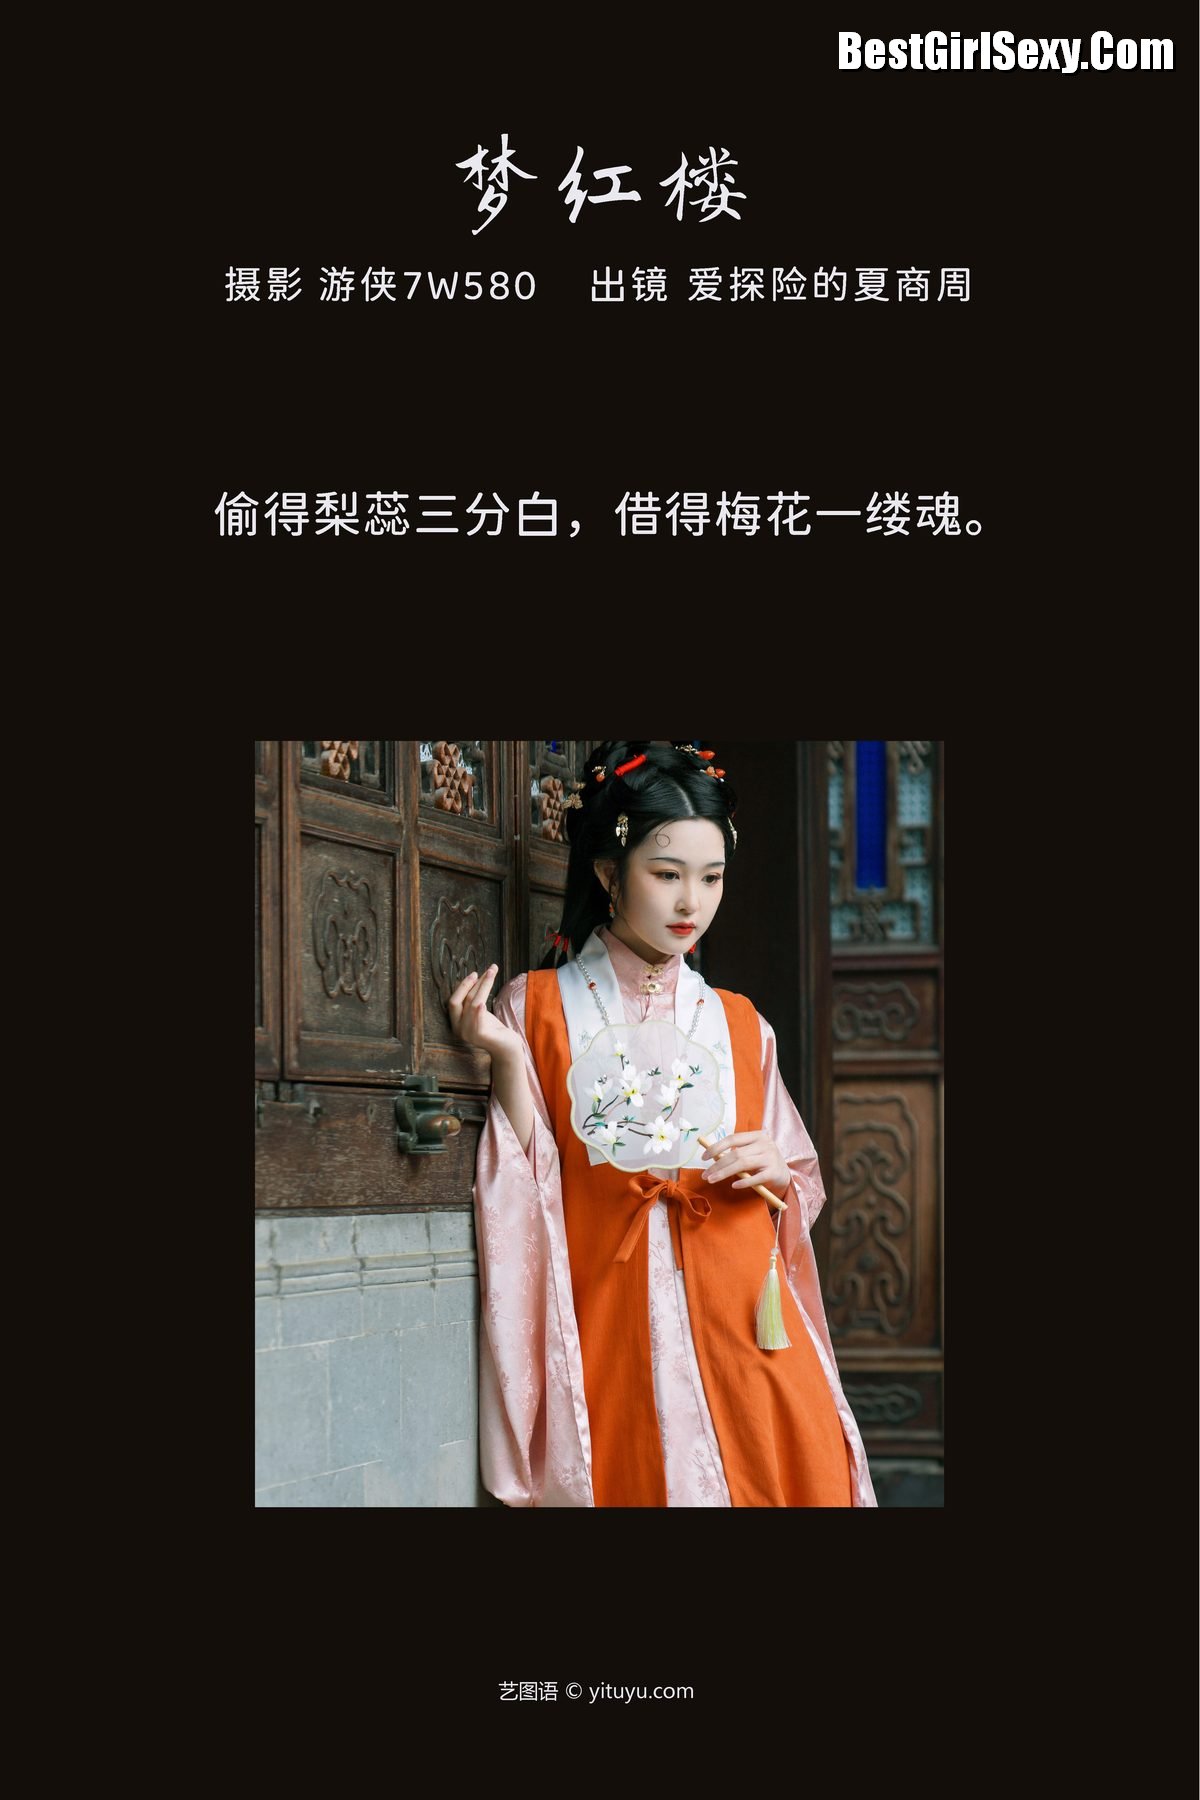 YiTuYu艺图语 Vol 3769 Ai Tan Xian De Xia Shang Zhou 0002 4269956957.jpg